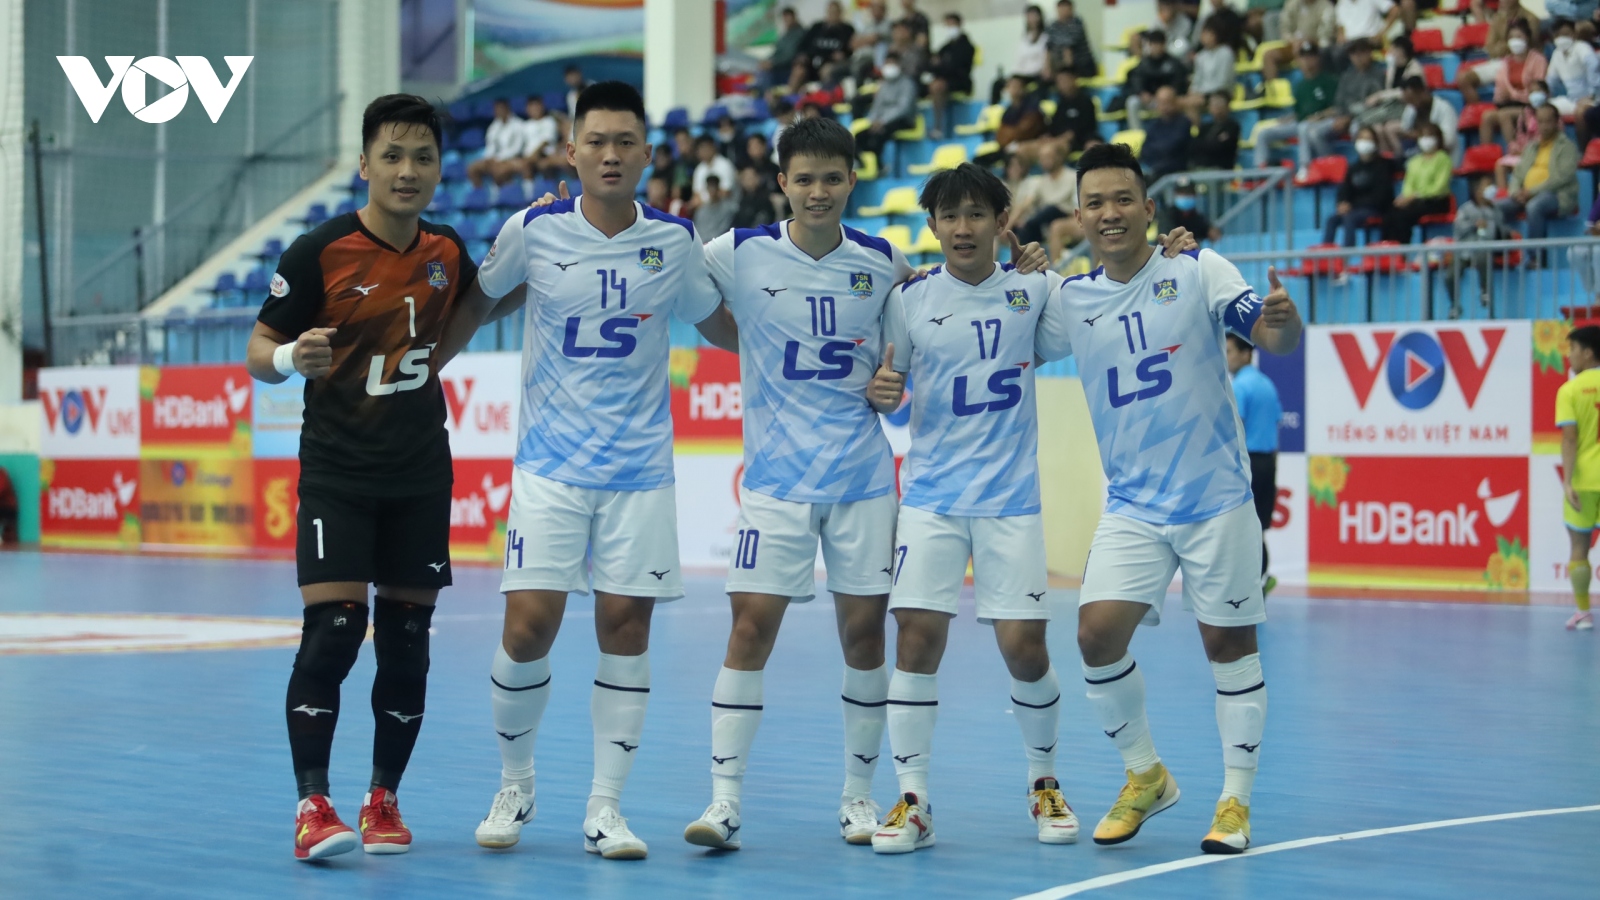 Giải Futsal HDBank VĐQG 2022: Thái Sơn Nam thắng nhẹ Đà Nẵng